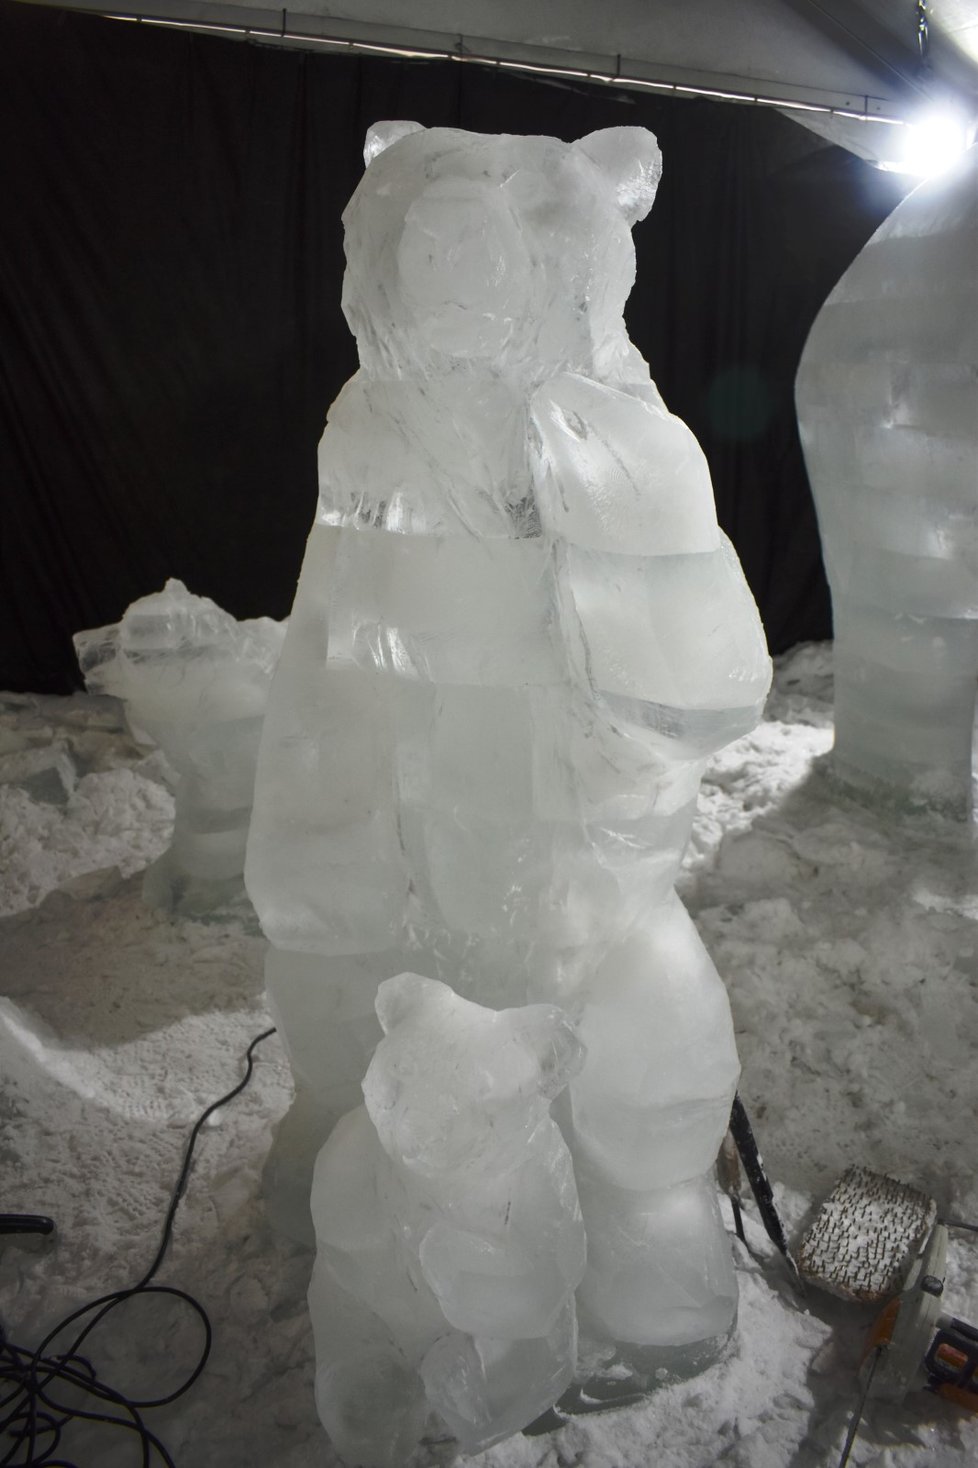 Letošní ročík festivalu ledových soch na Pustevnách se nese v duchu Noemovy archy.